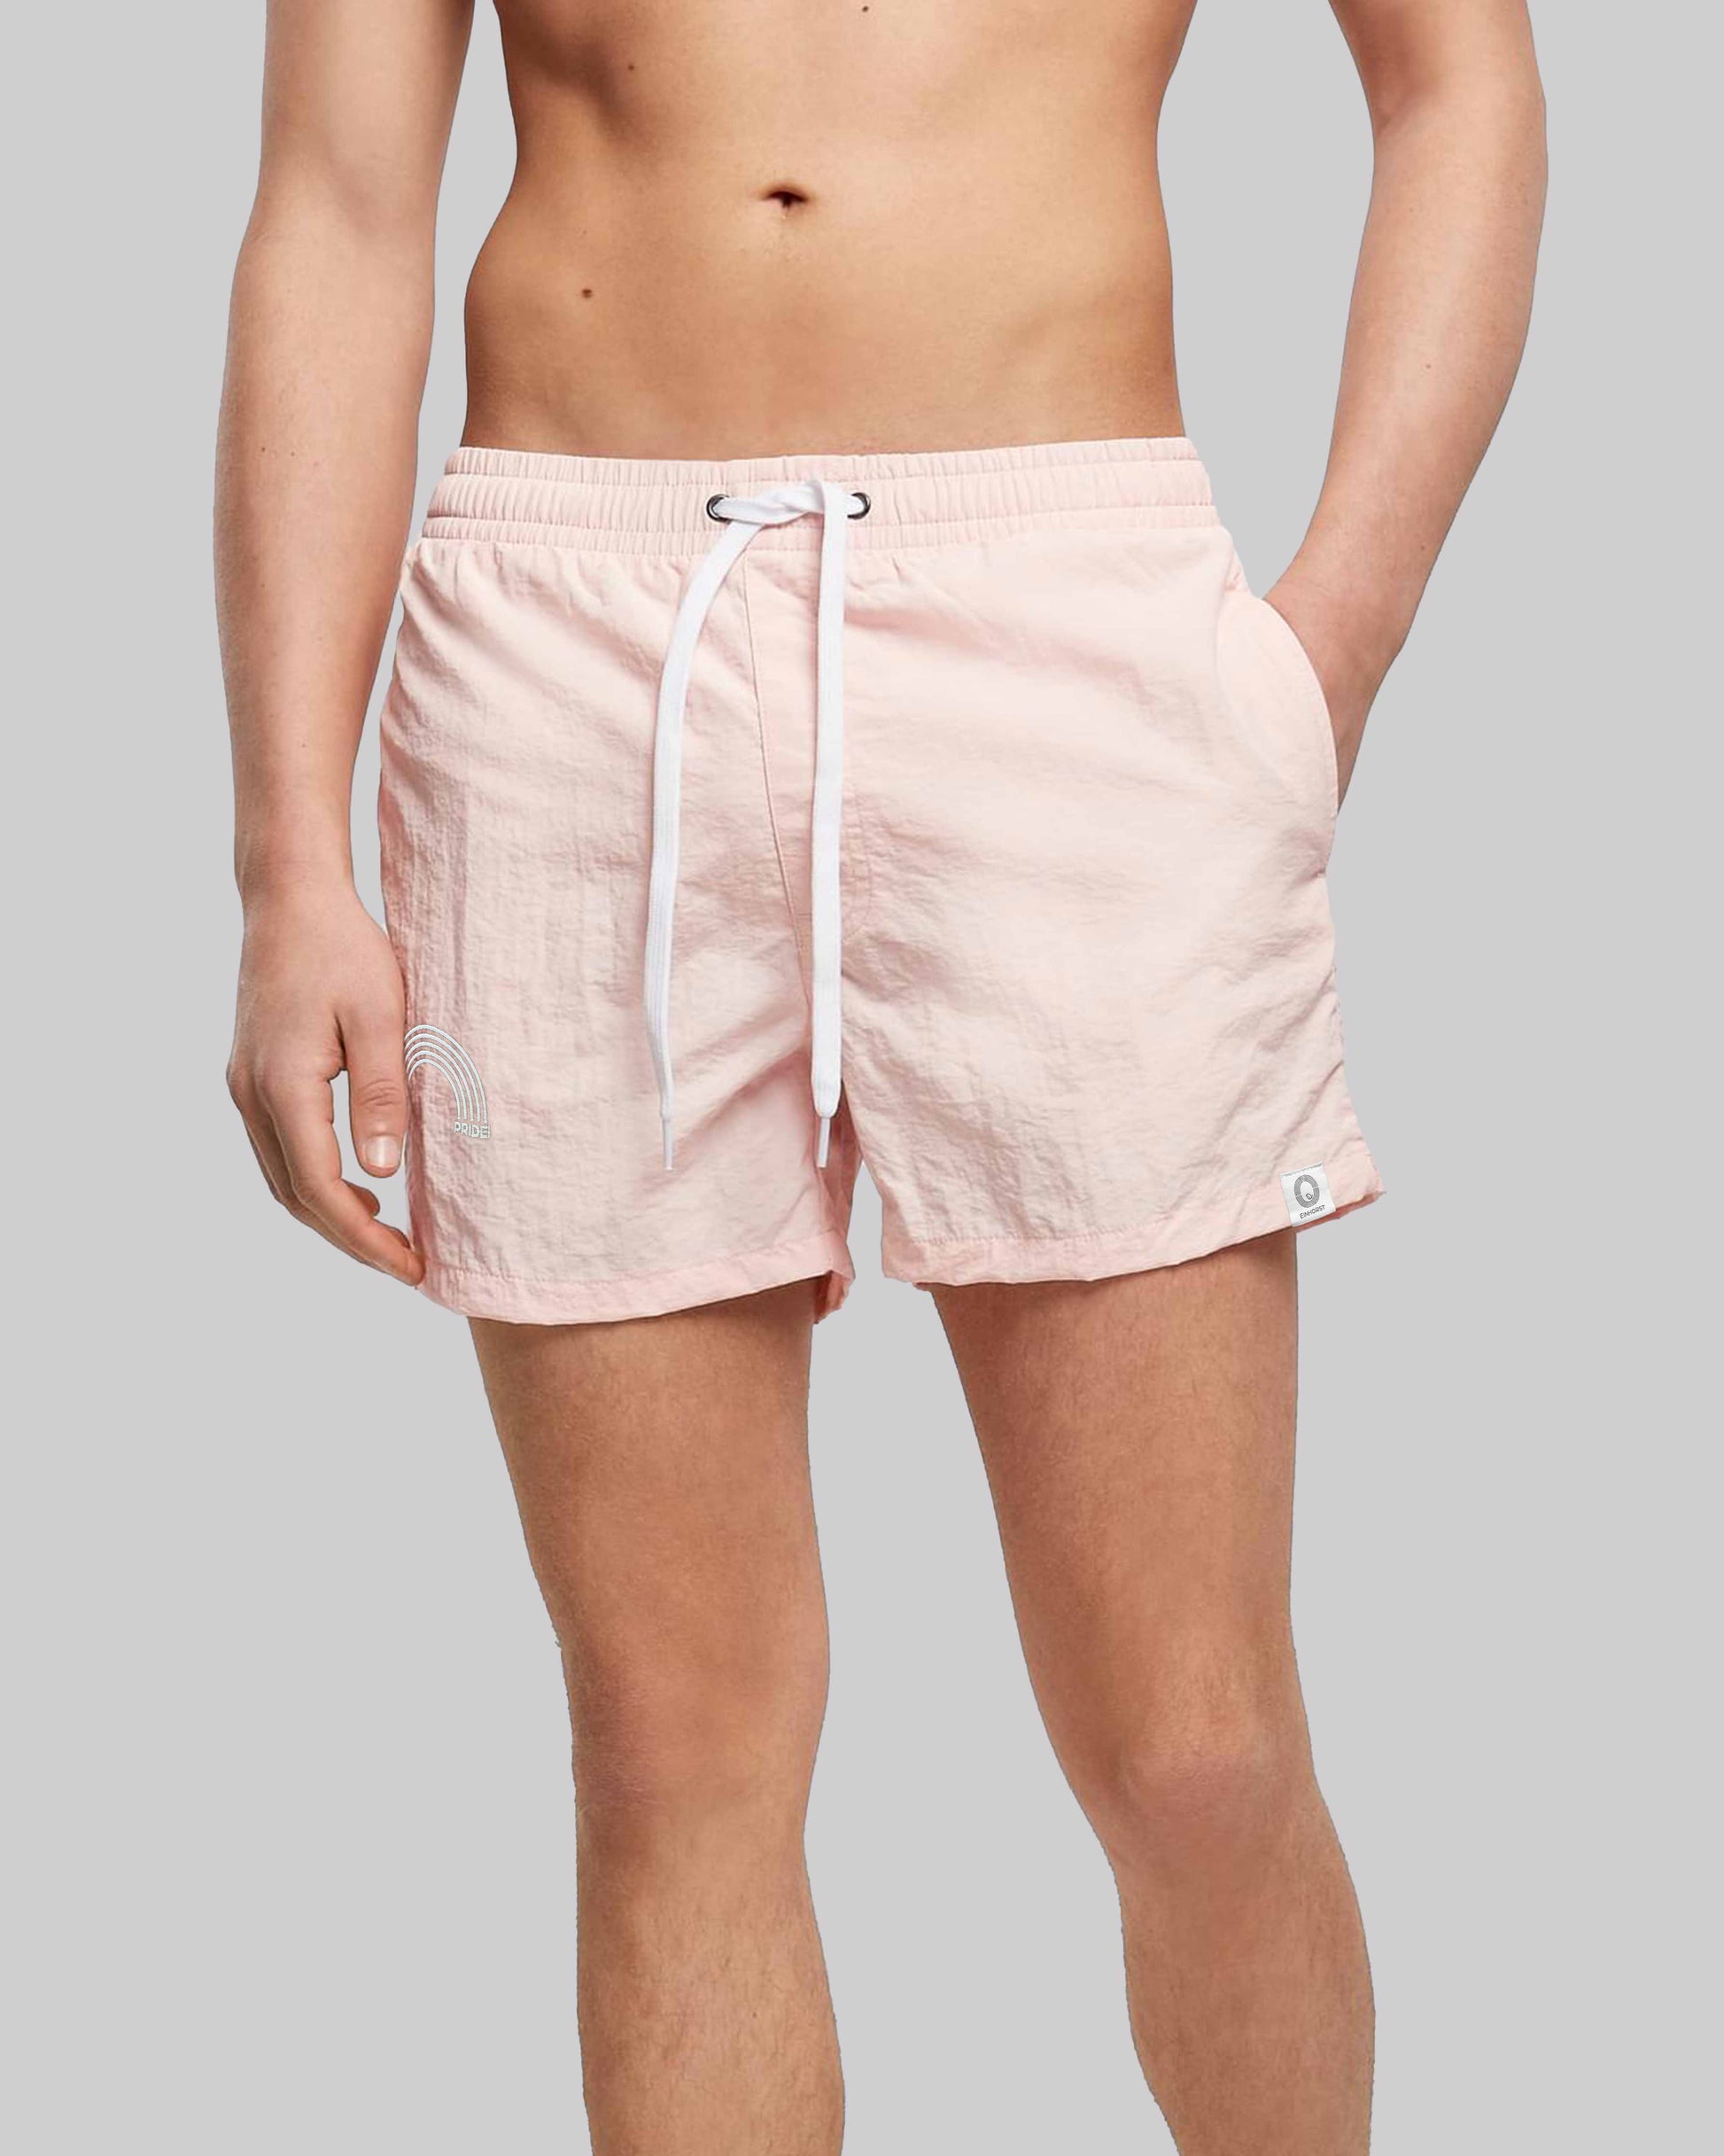 EINHORST® Schwimm- & Sportshorts mit dem Motiv "pride-Regenbogen" in der Farbe "Pink", Bild von einer männlichen Person von vorne, die die Shorts trägt